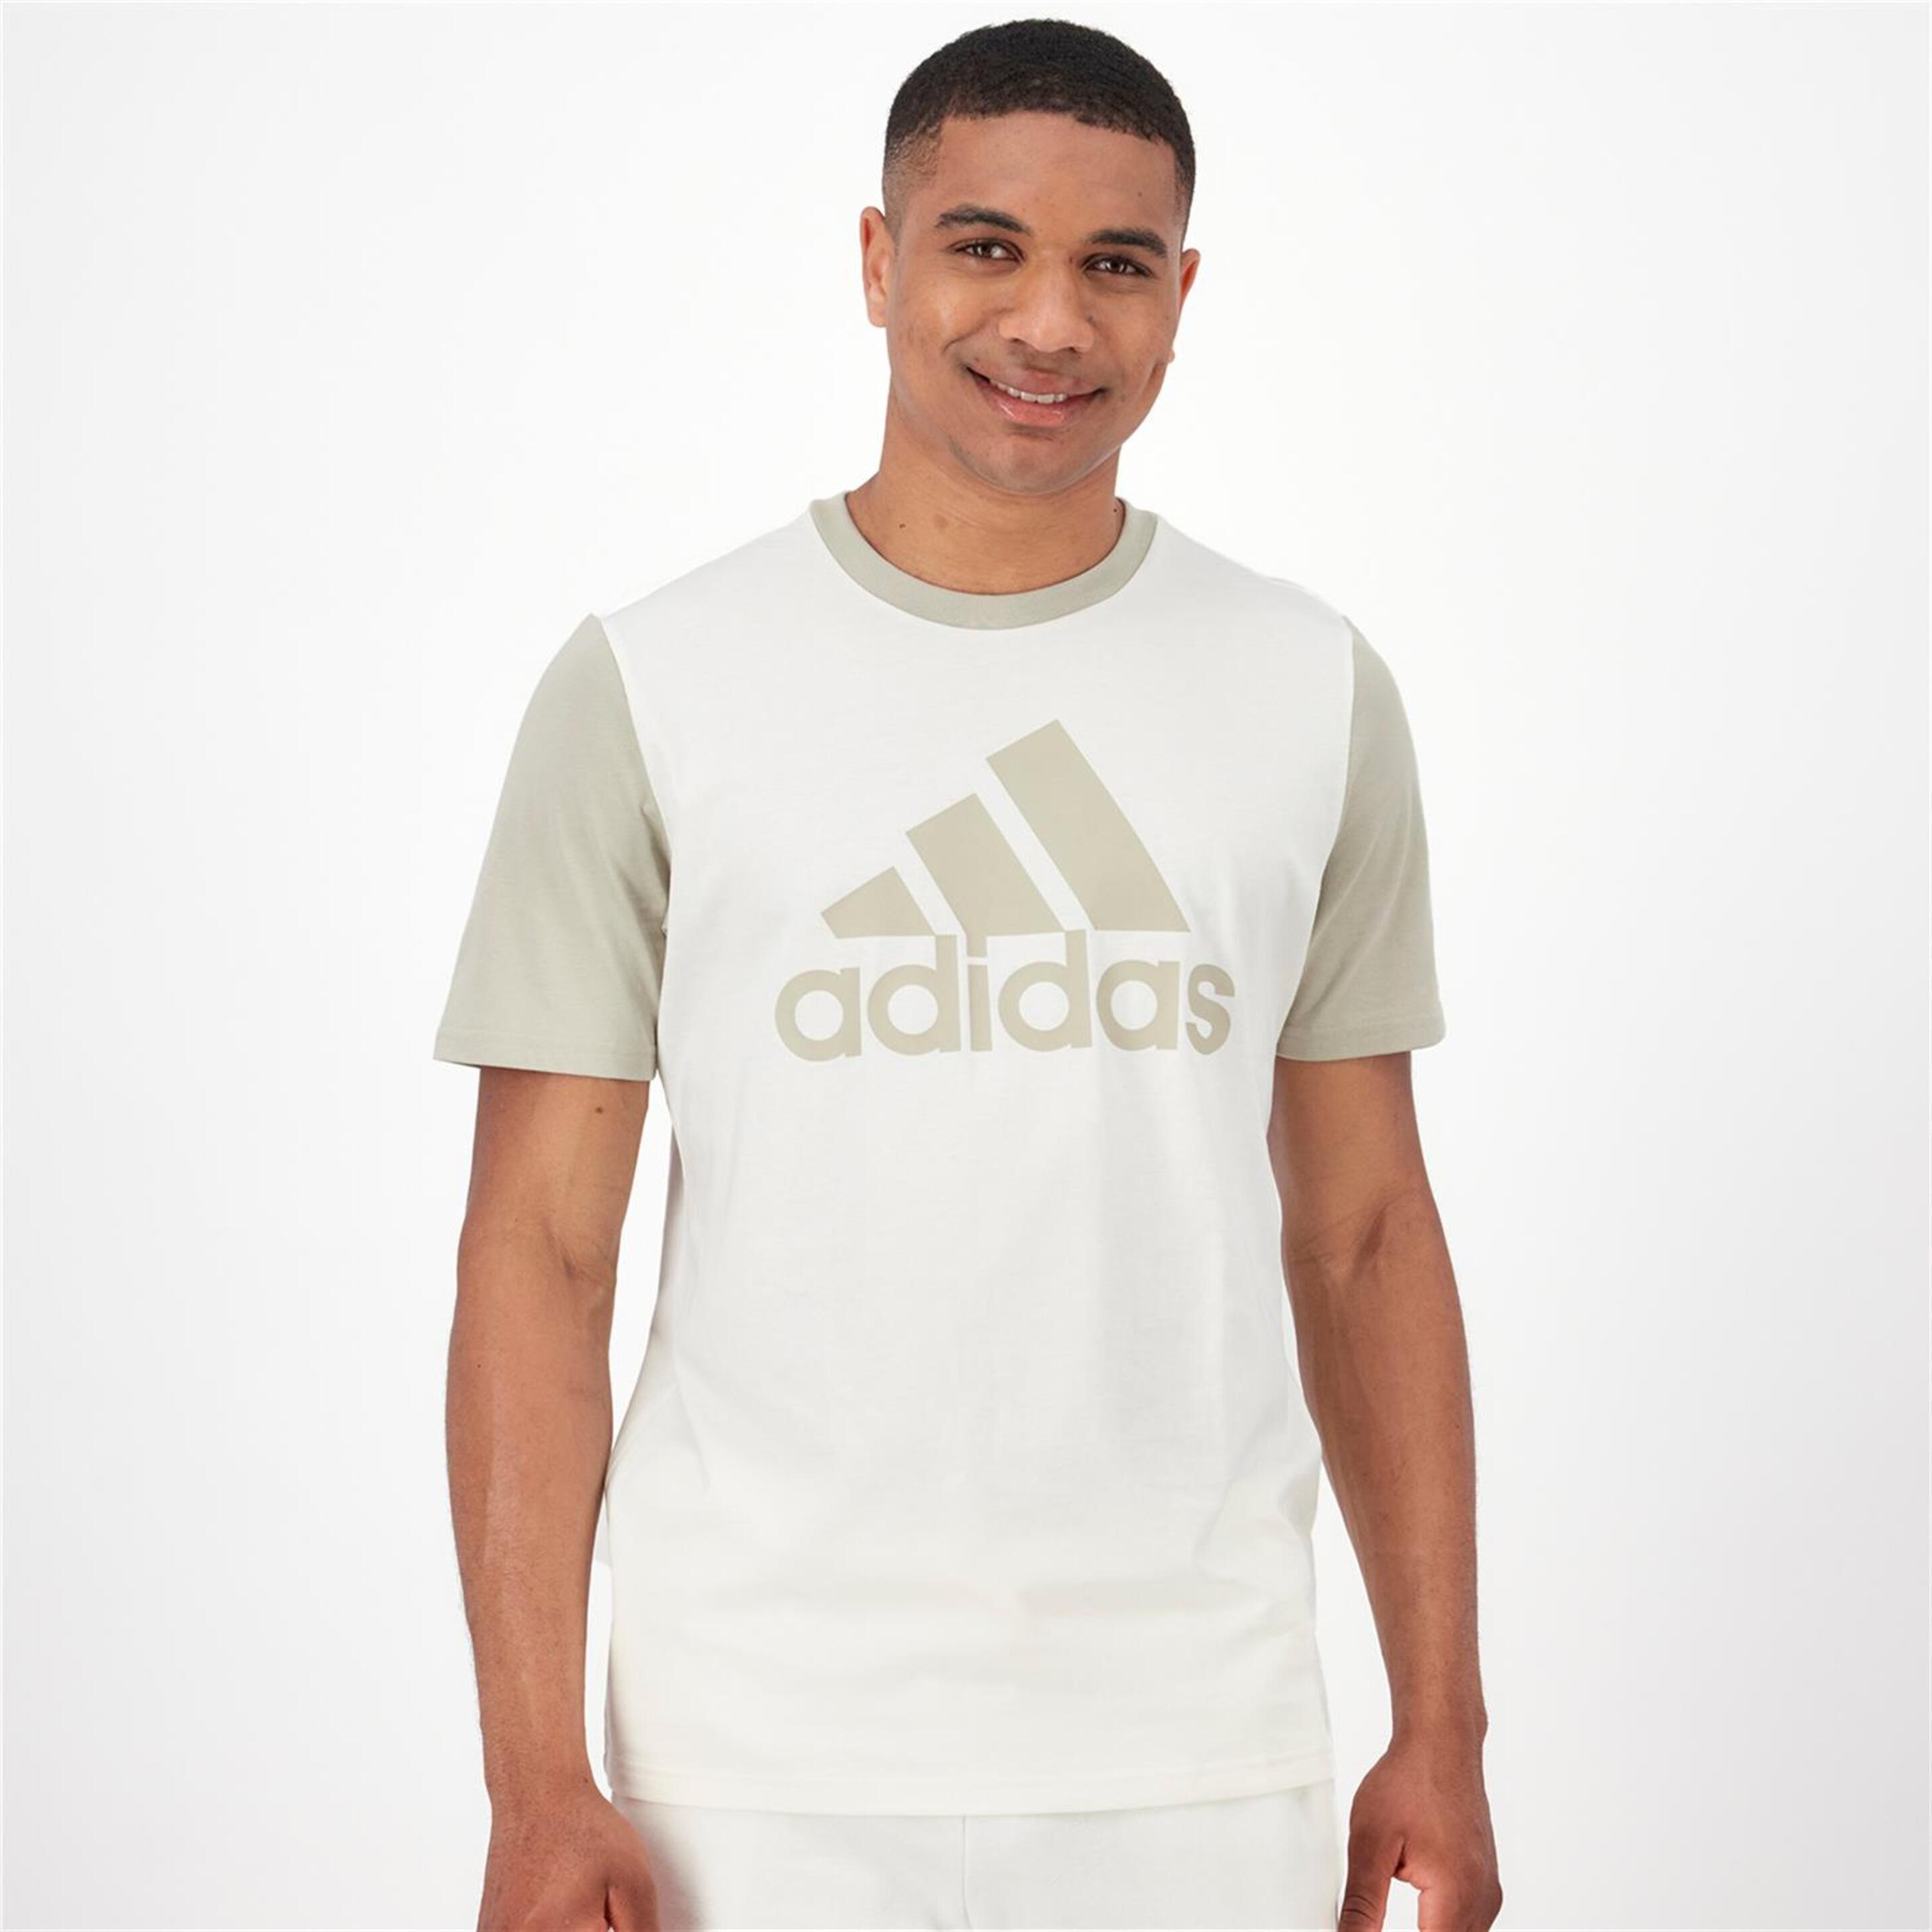 adidas 3s Multi - blanco - T-shirt Homem